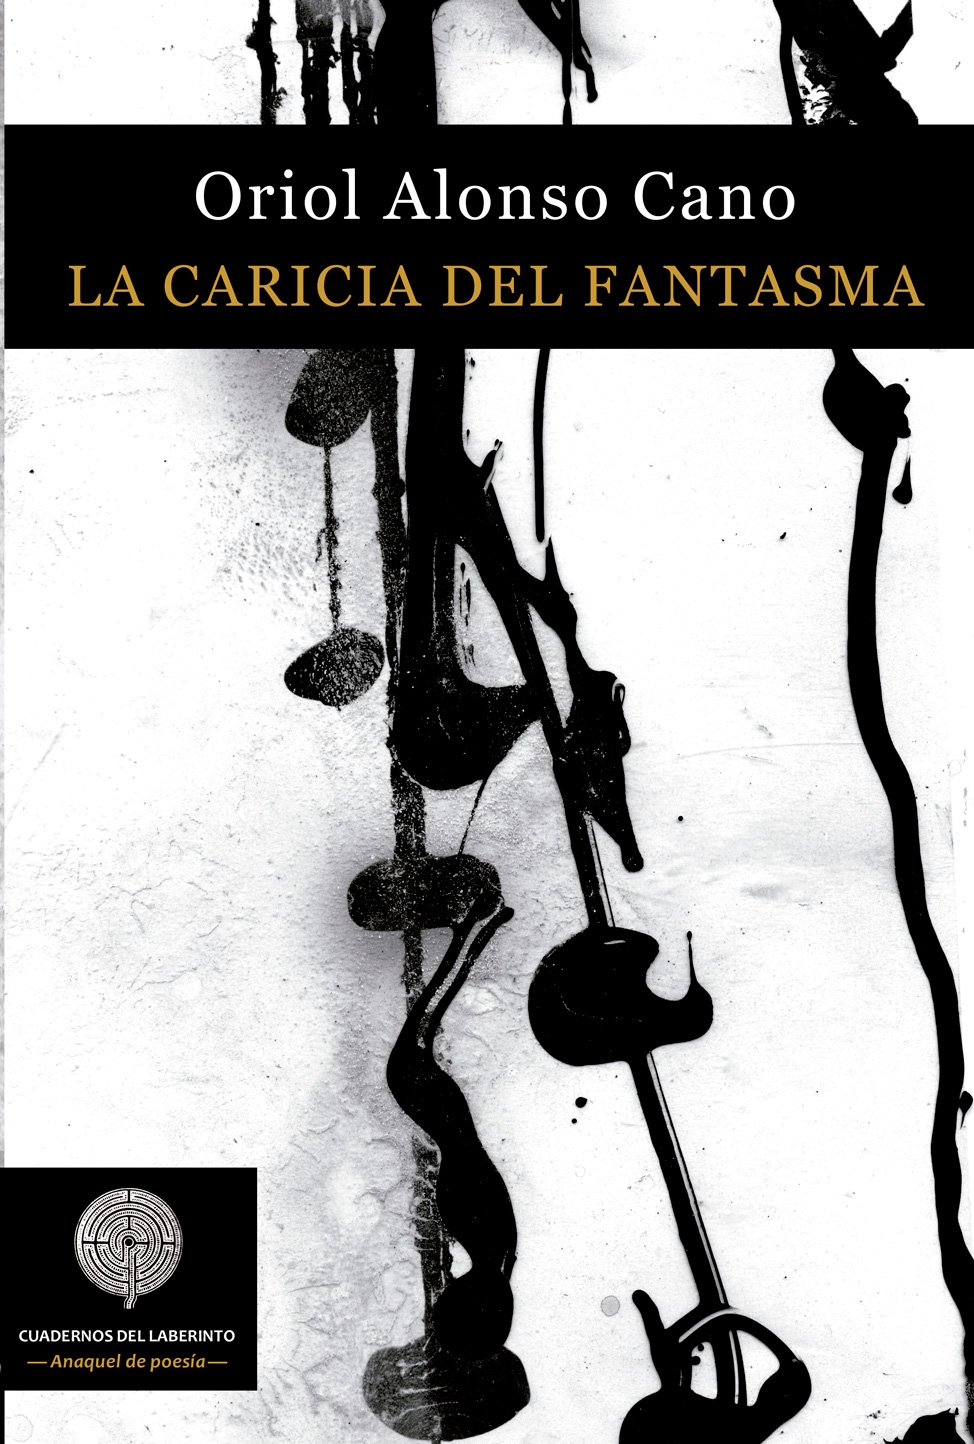 La caricia del fantasma, poemas de Oriol Alonso Cano